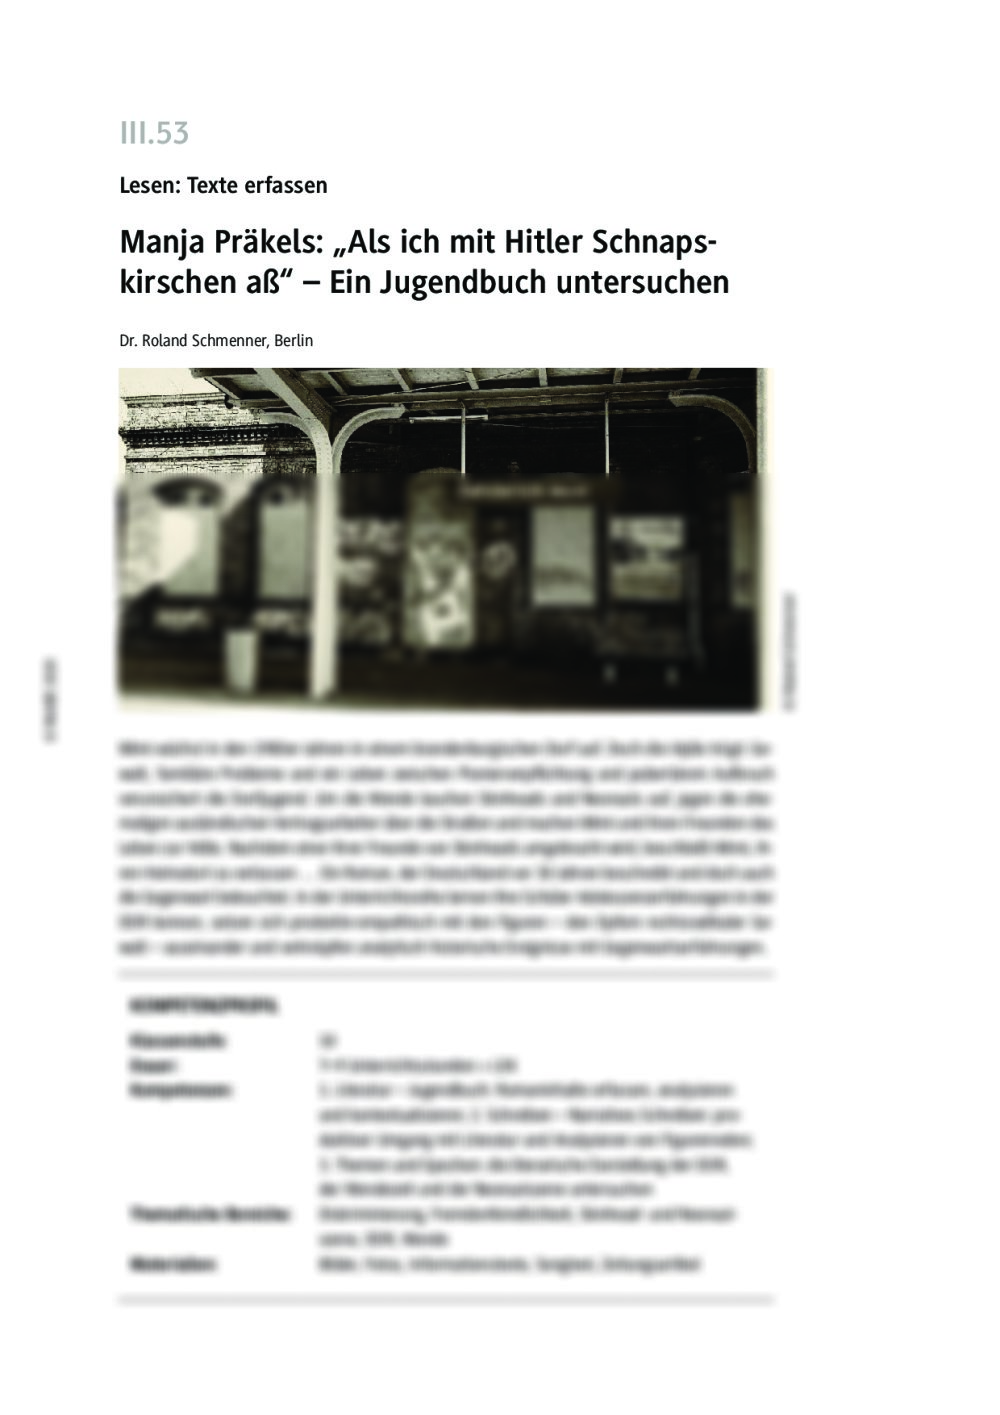 Manja Präkels: "Als ich mit Hitler Schnapskirschen aß" - Seite 1